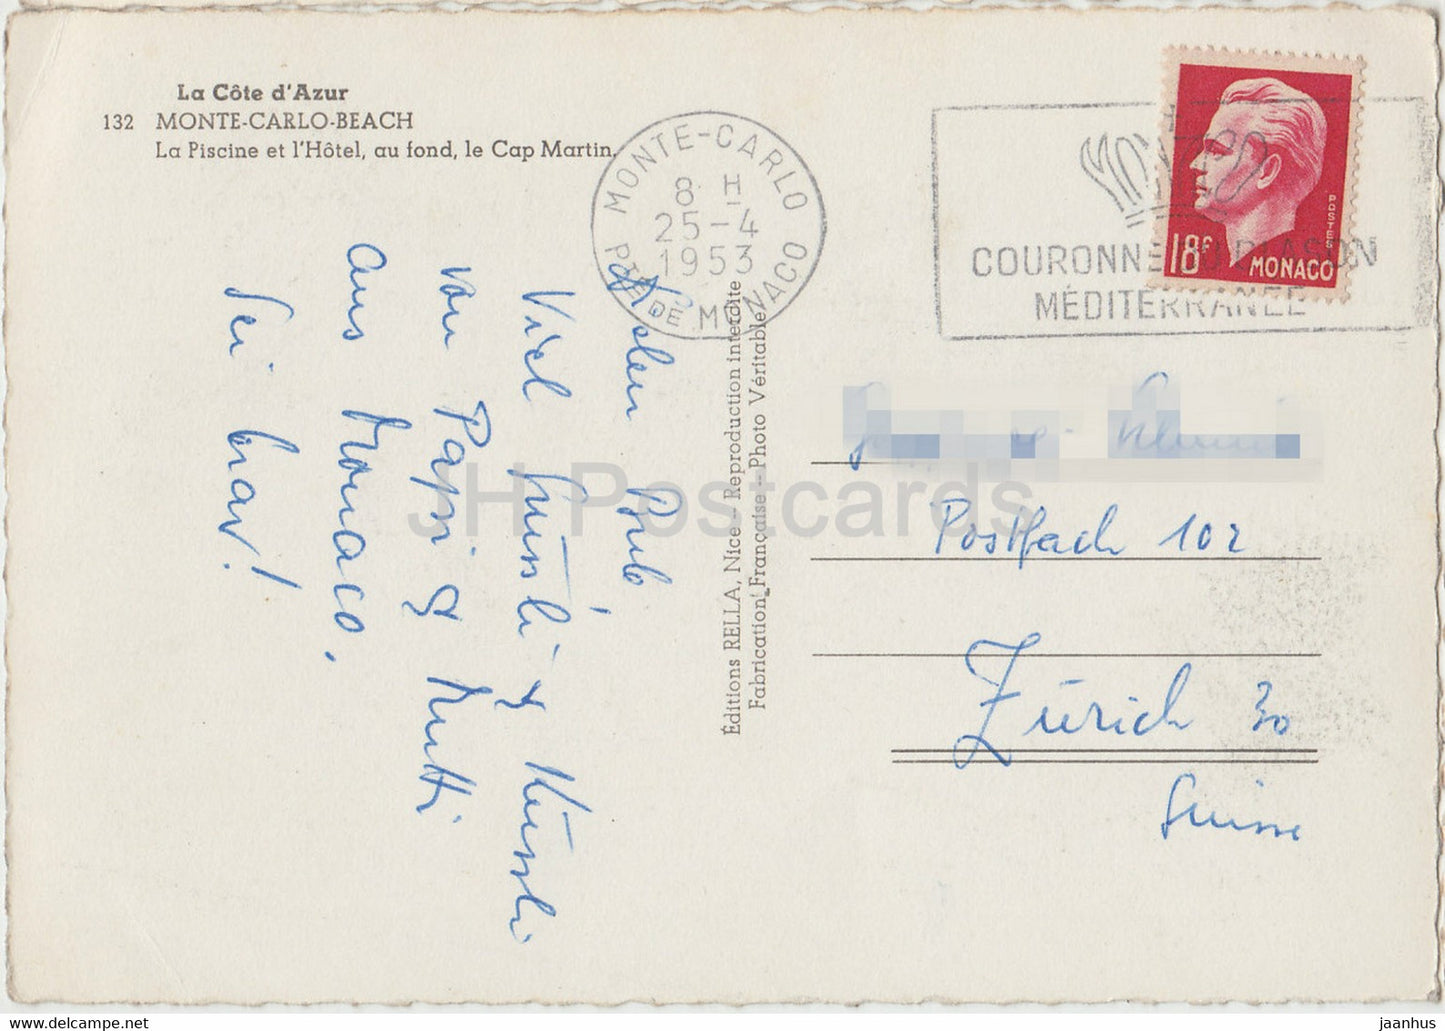 Monte Carlo Beach - La Piscine et l'Hôtel au fond . Le Cap Martin - carte postale ancienne - 1953 - Monaco - occasion